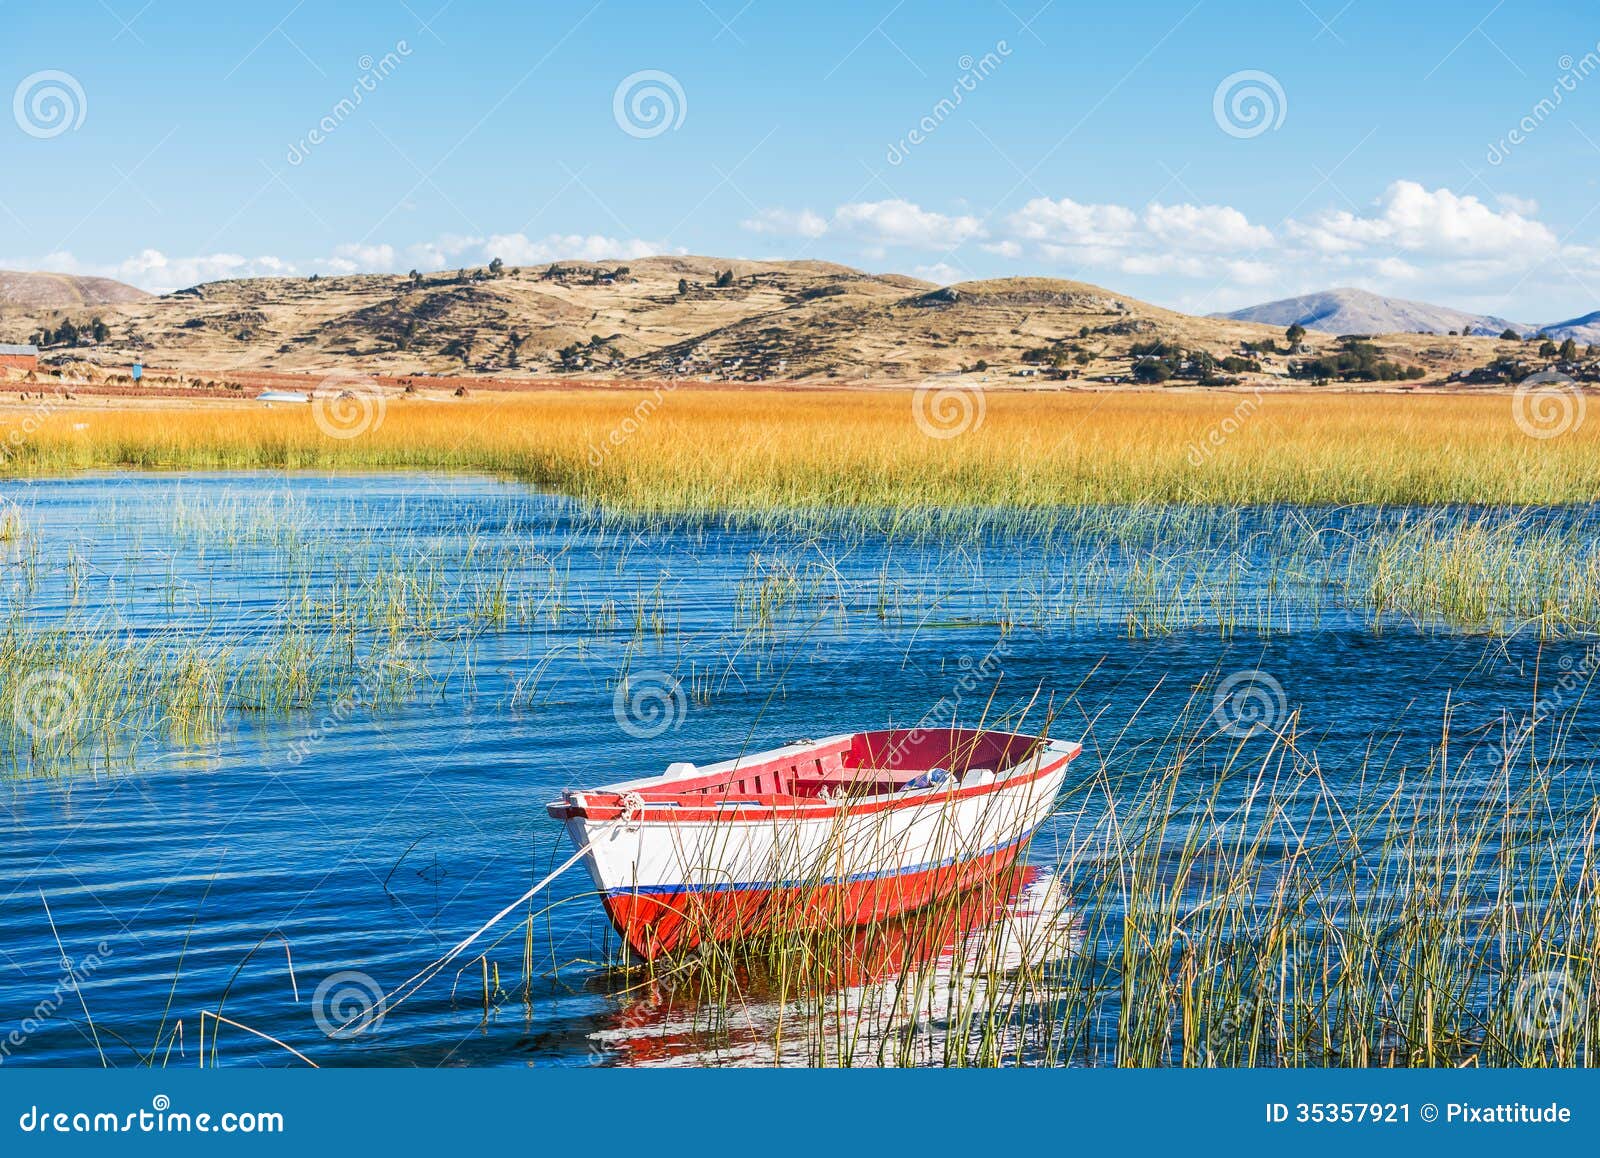 boat in titicaca lake peruvian andes at puno peru